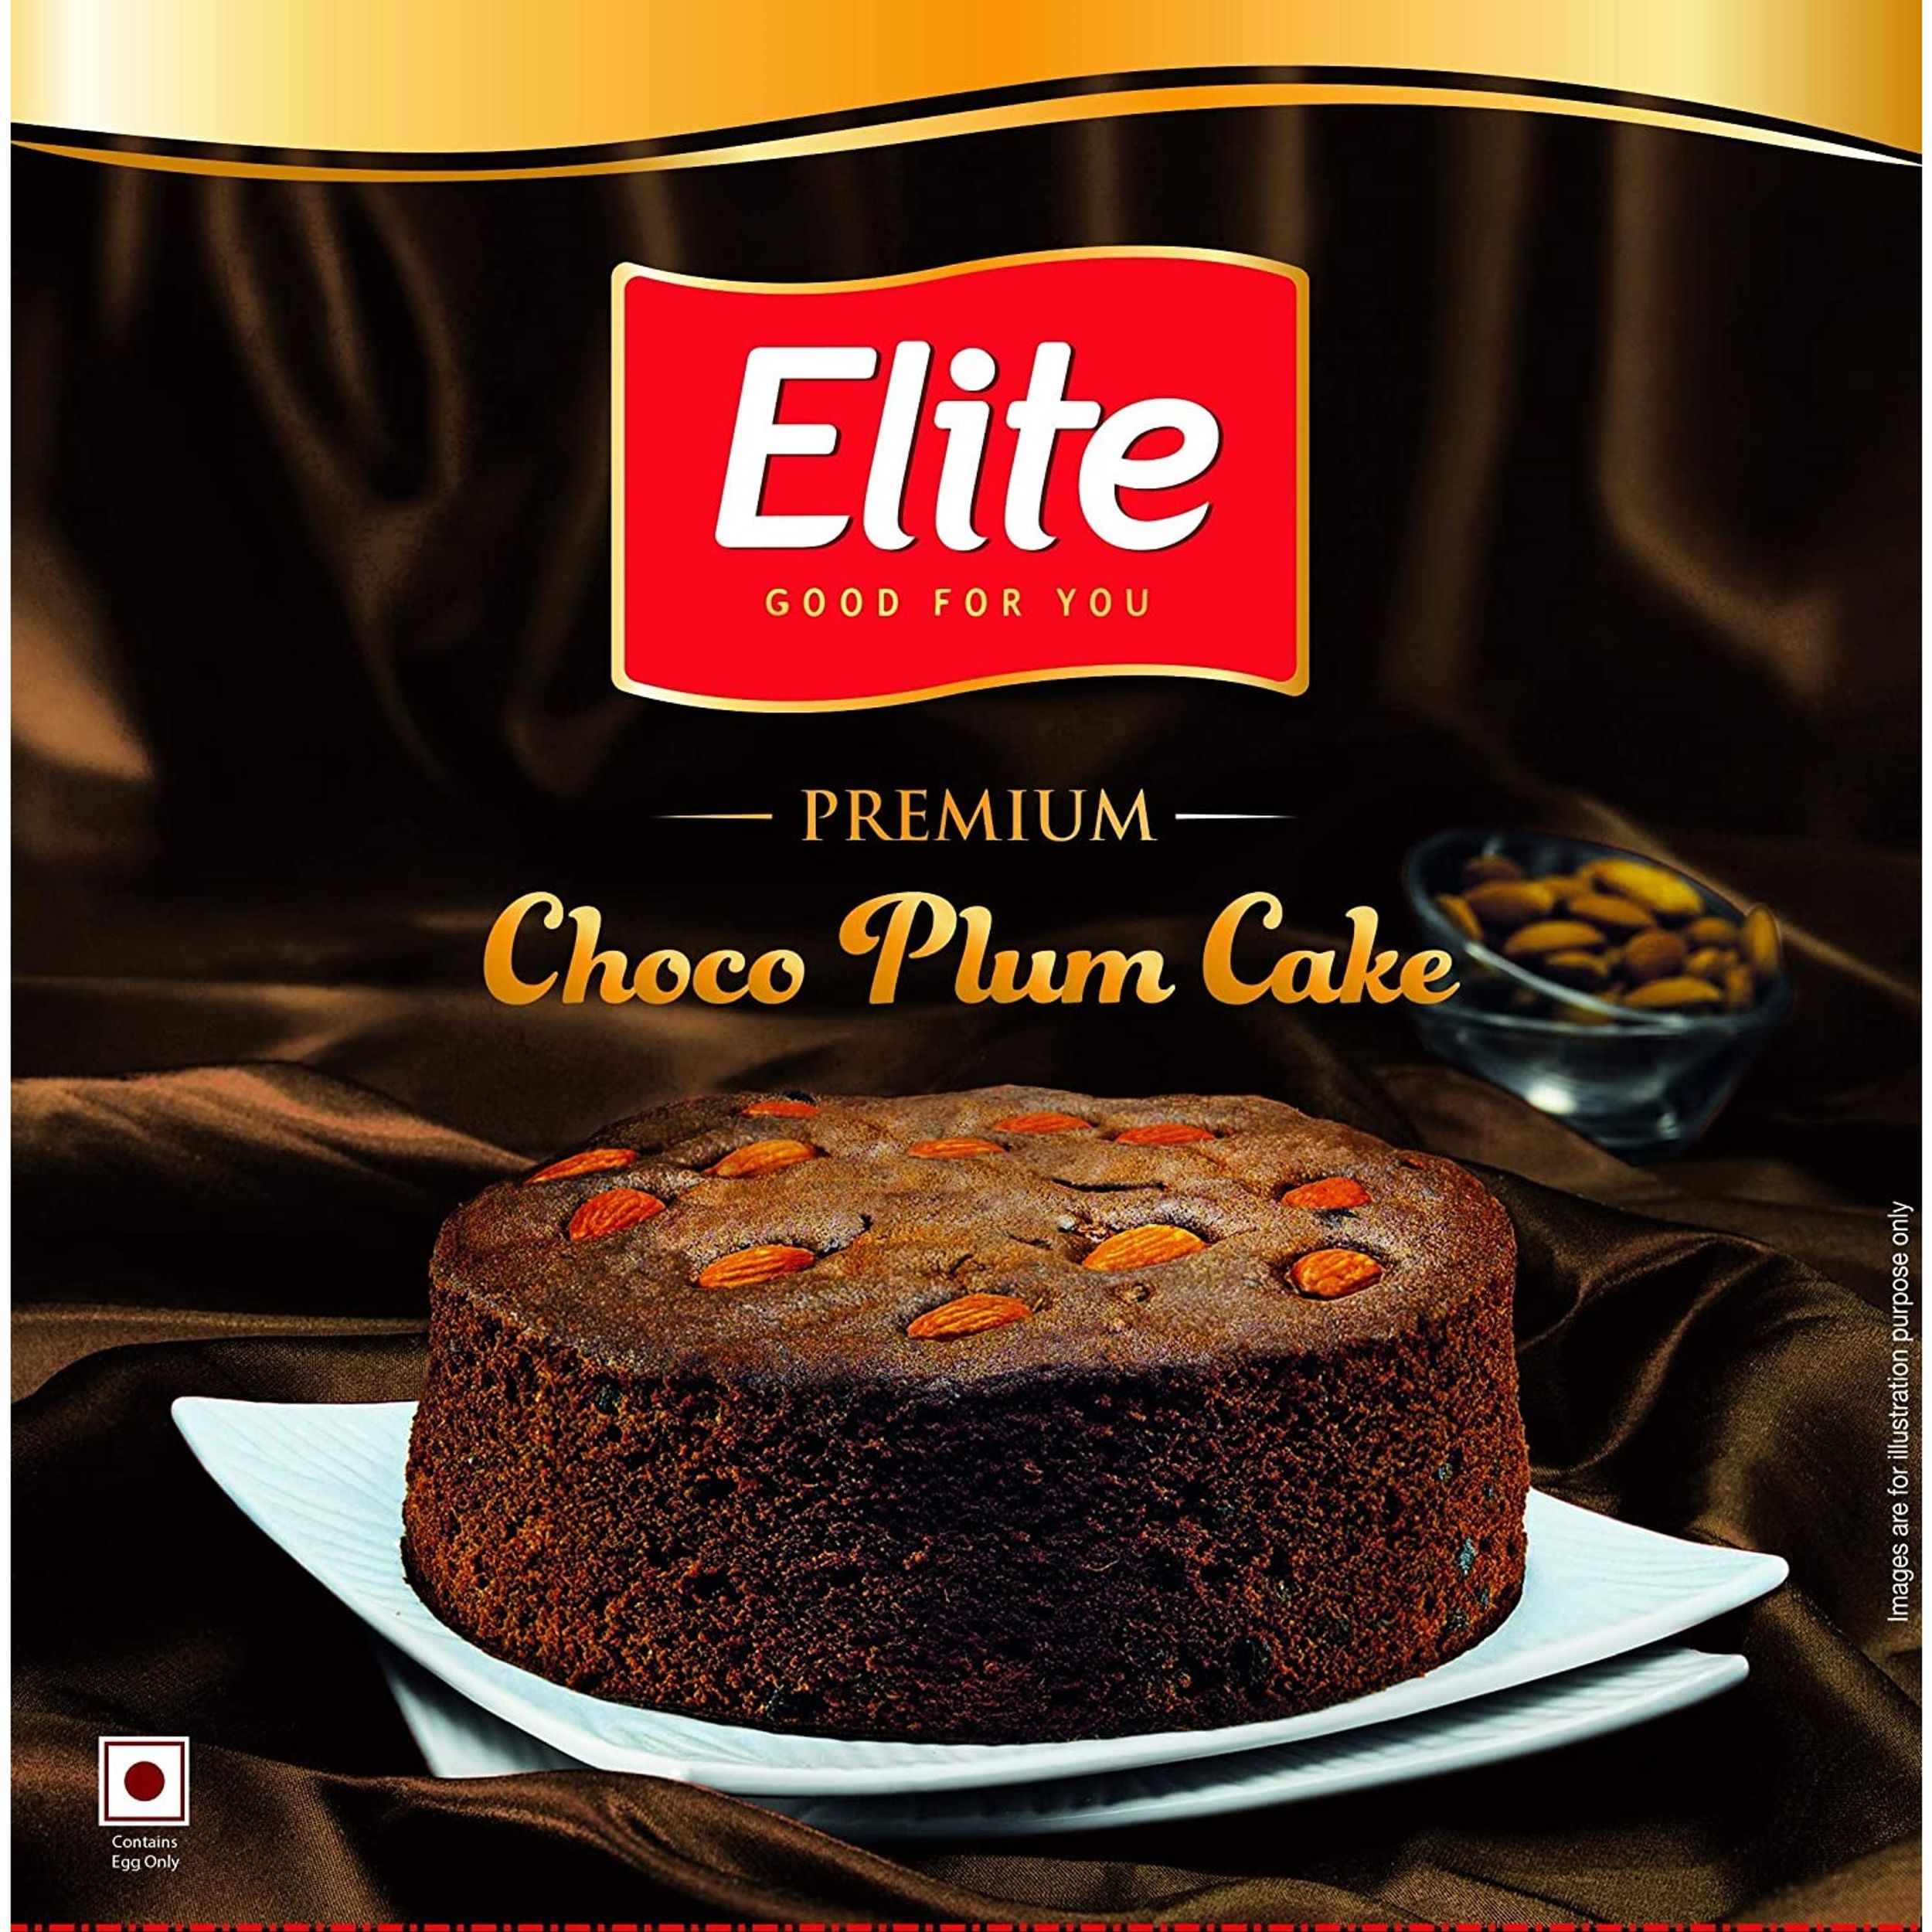 Premium choco elite plum cake from kerala, India – Asian Foods